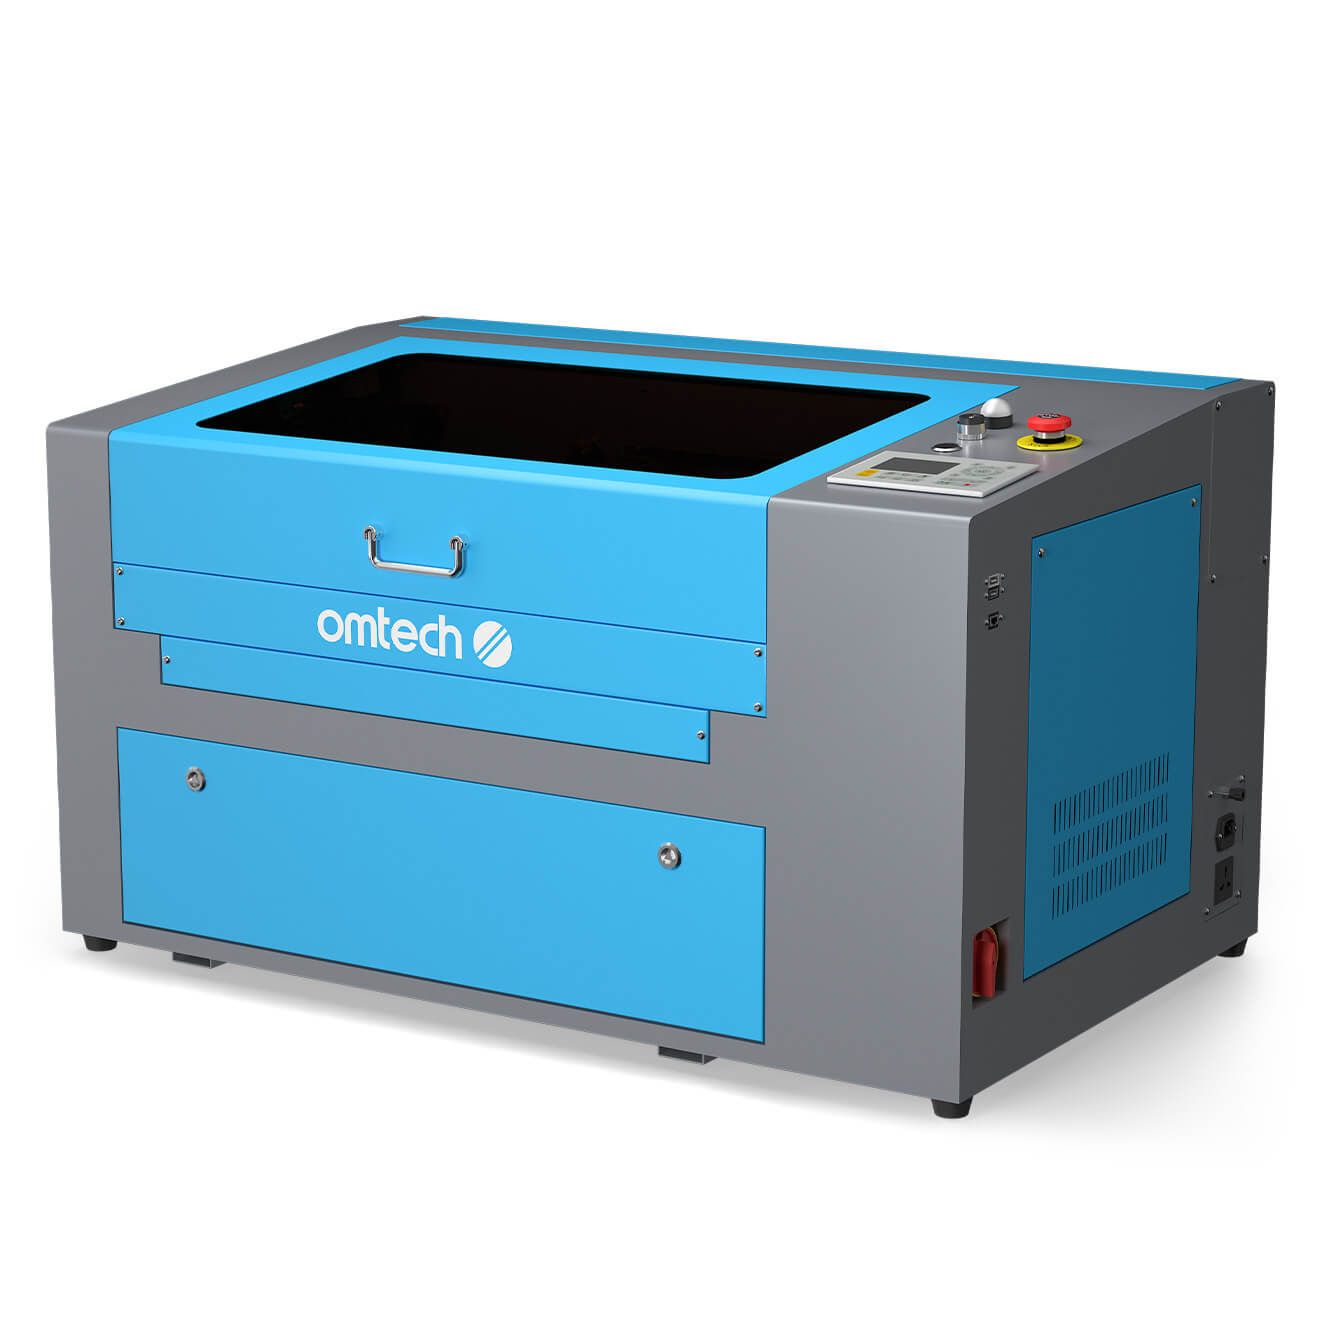 Machine de découpe et gravure LASER GS5030 50W